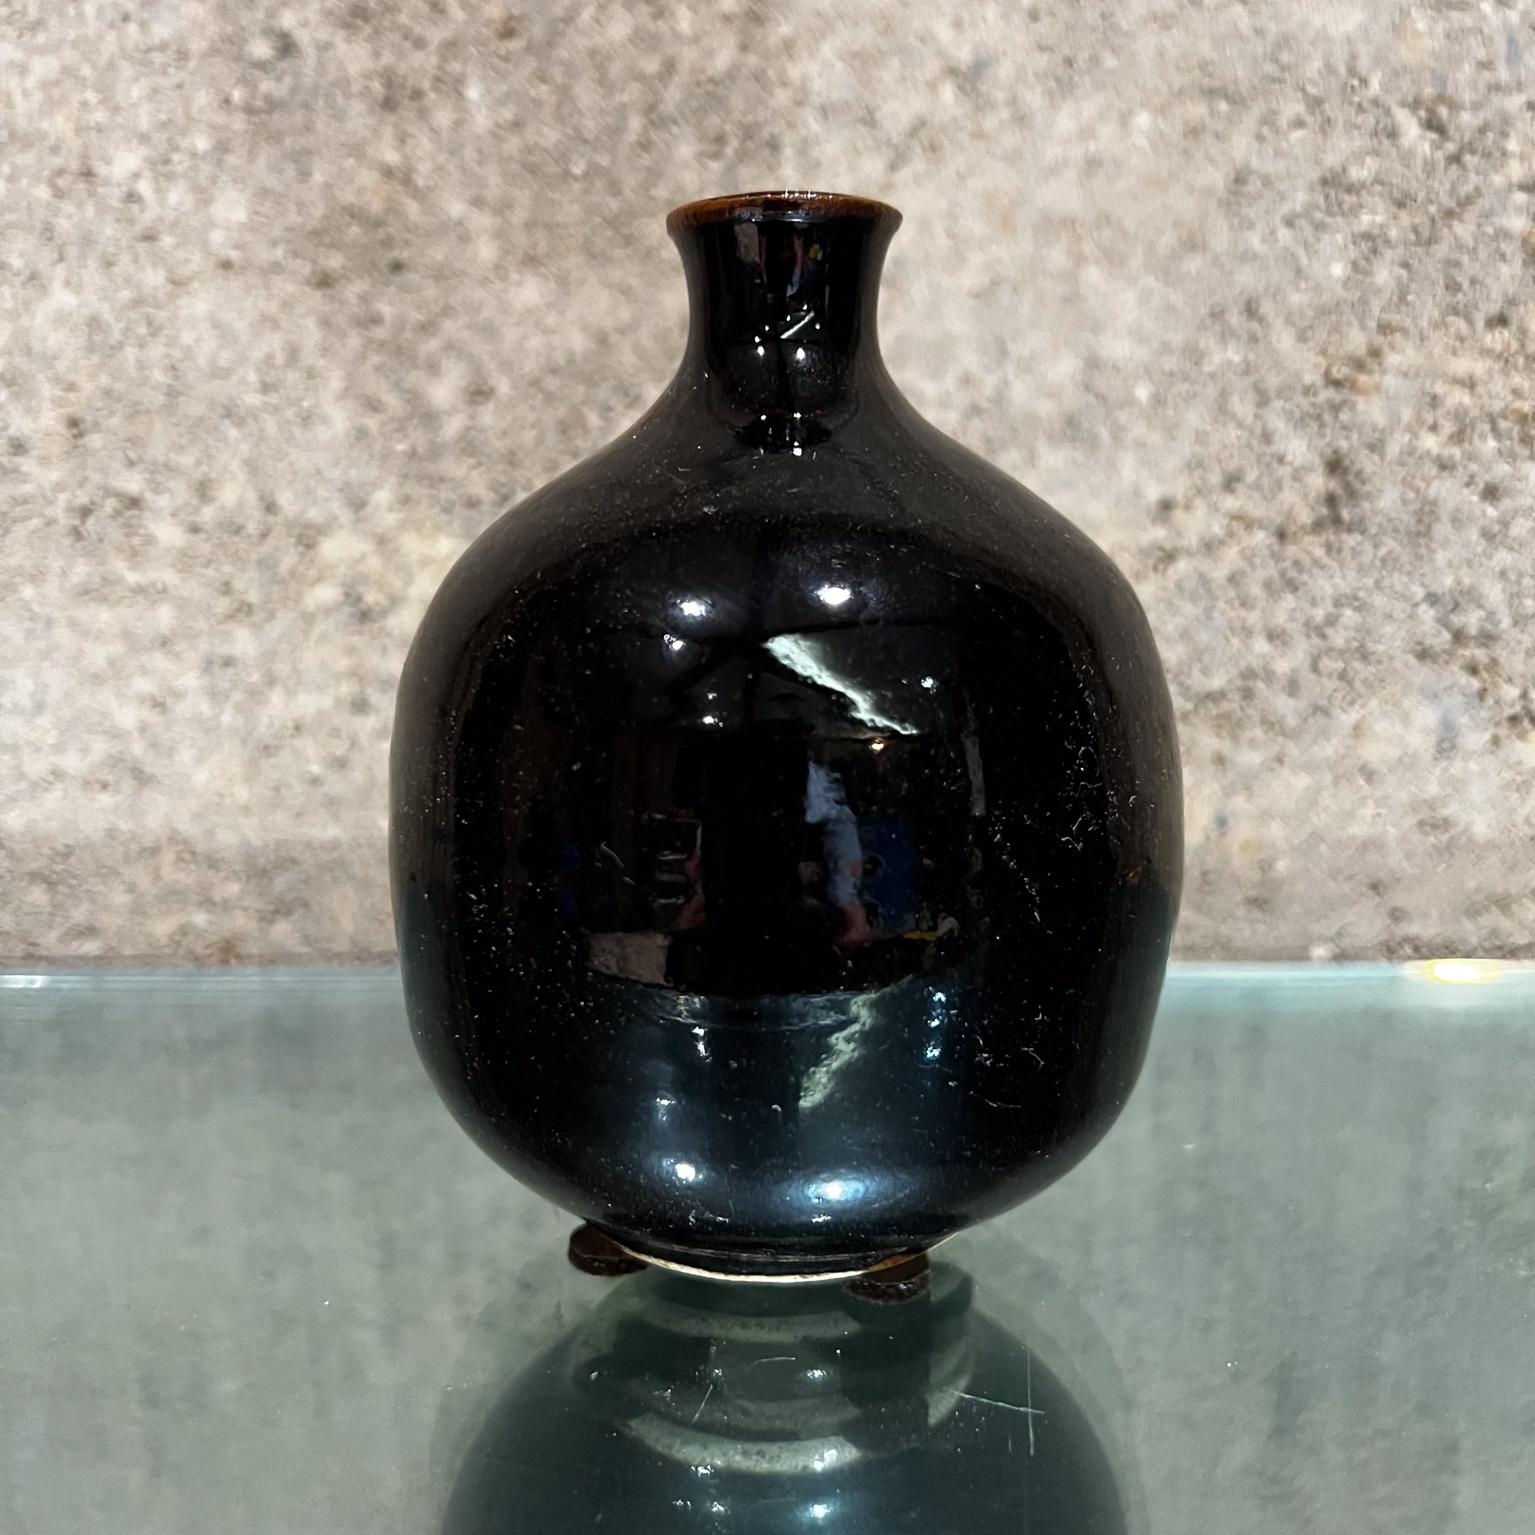 
1960er Jahre Japanische Unkraut Topf Vase Dunkelbraun Glasur
3,75 Durchmesser x 4,5 h
Unterzeichnet, kann aber nicht lesen.
Original Vintage Zustand
Siehe Bilder.




